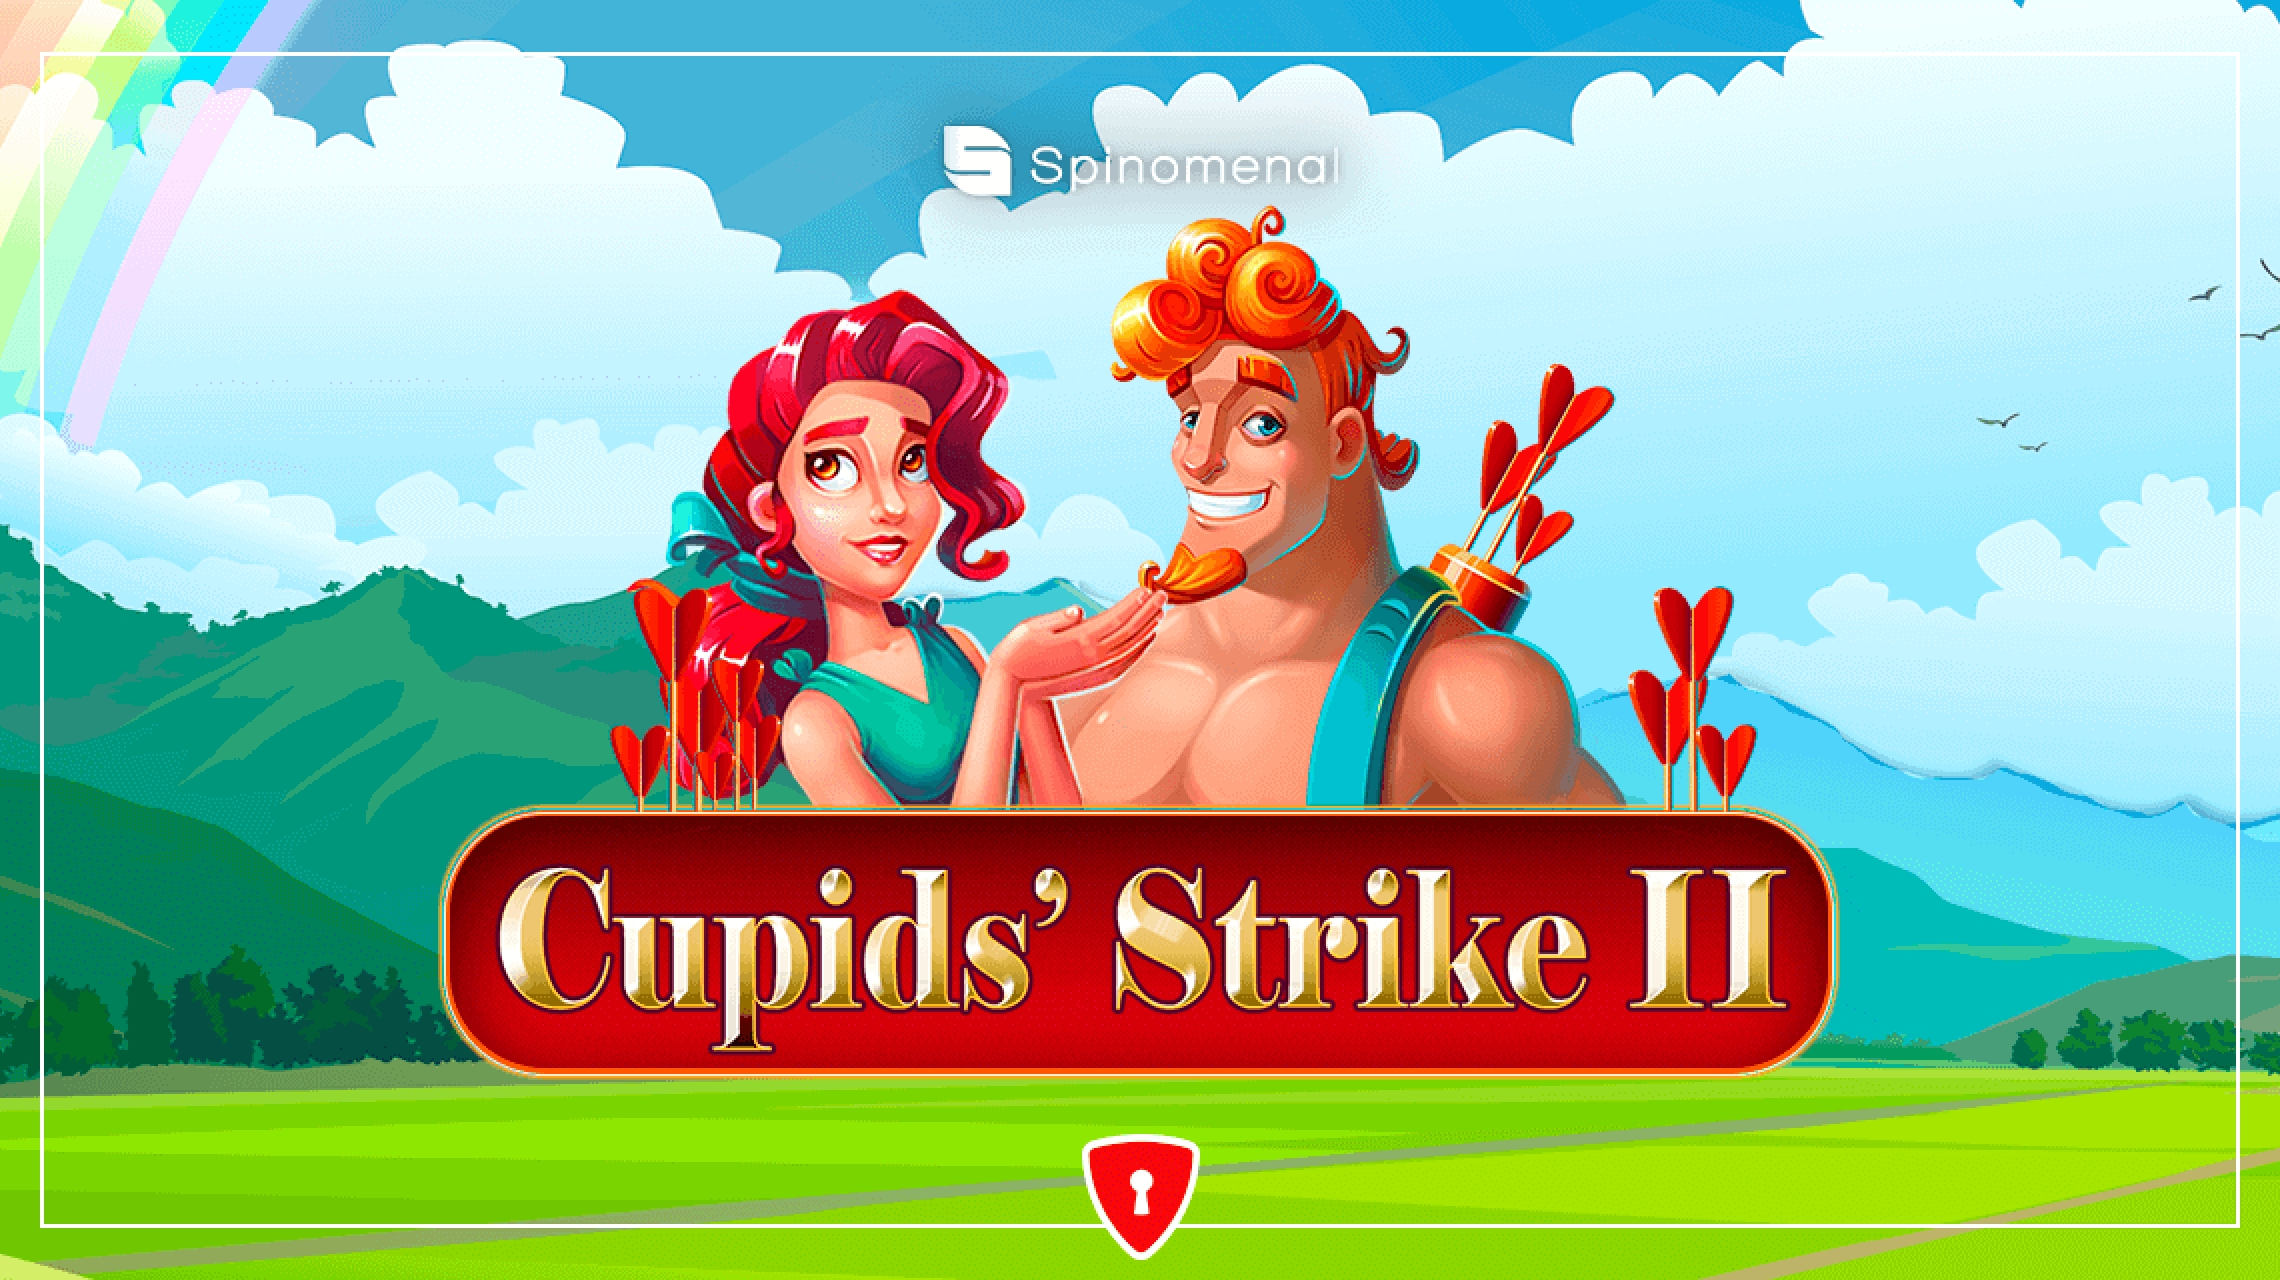 Cupids Strike 2 demo